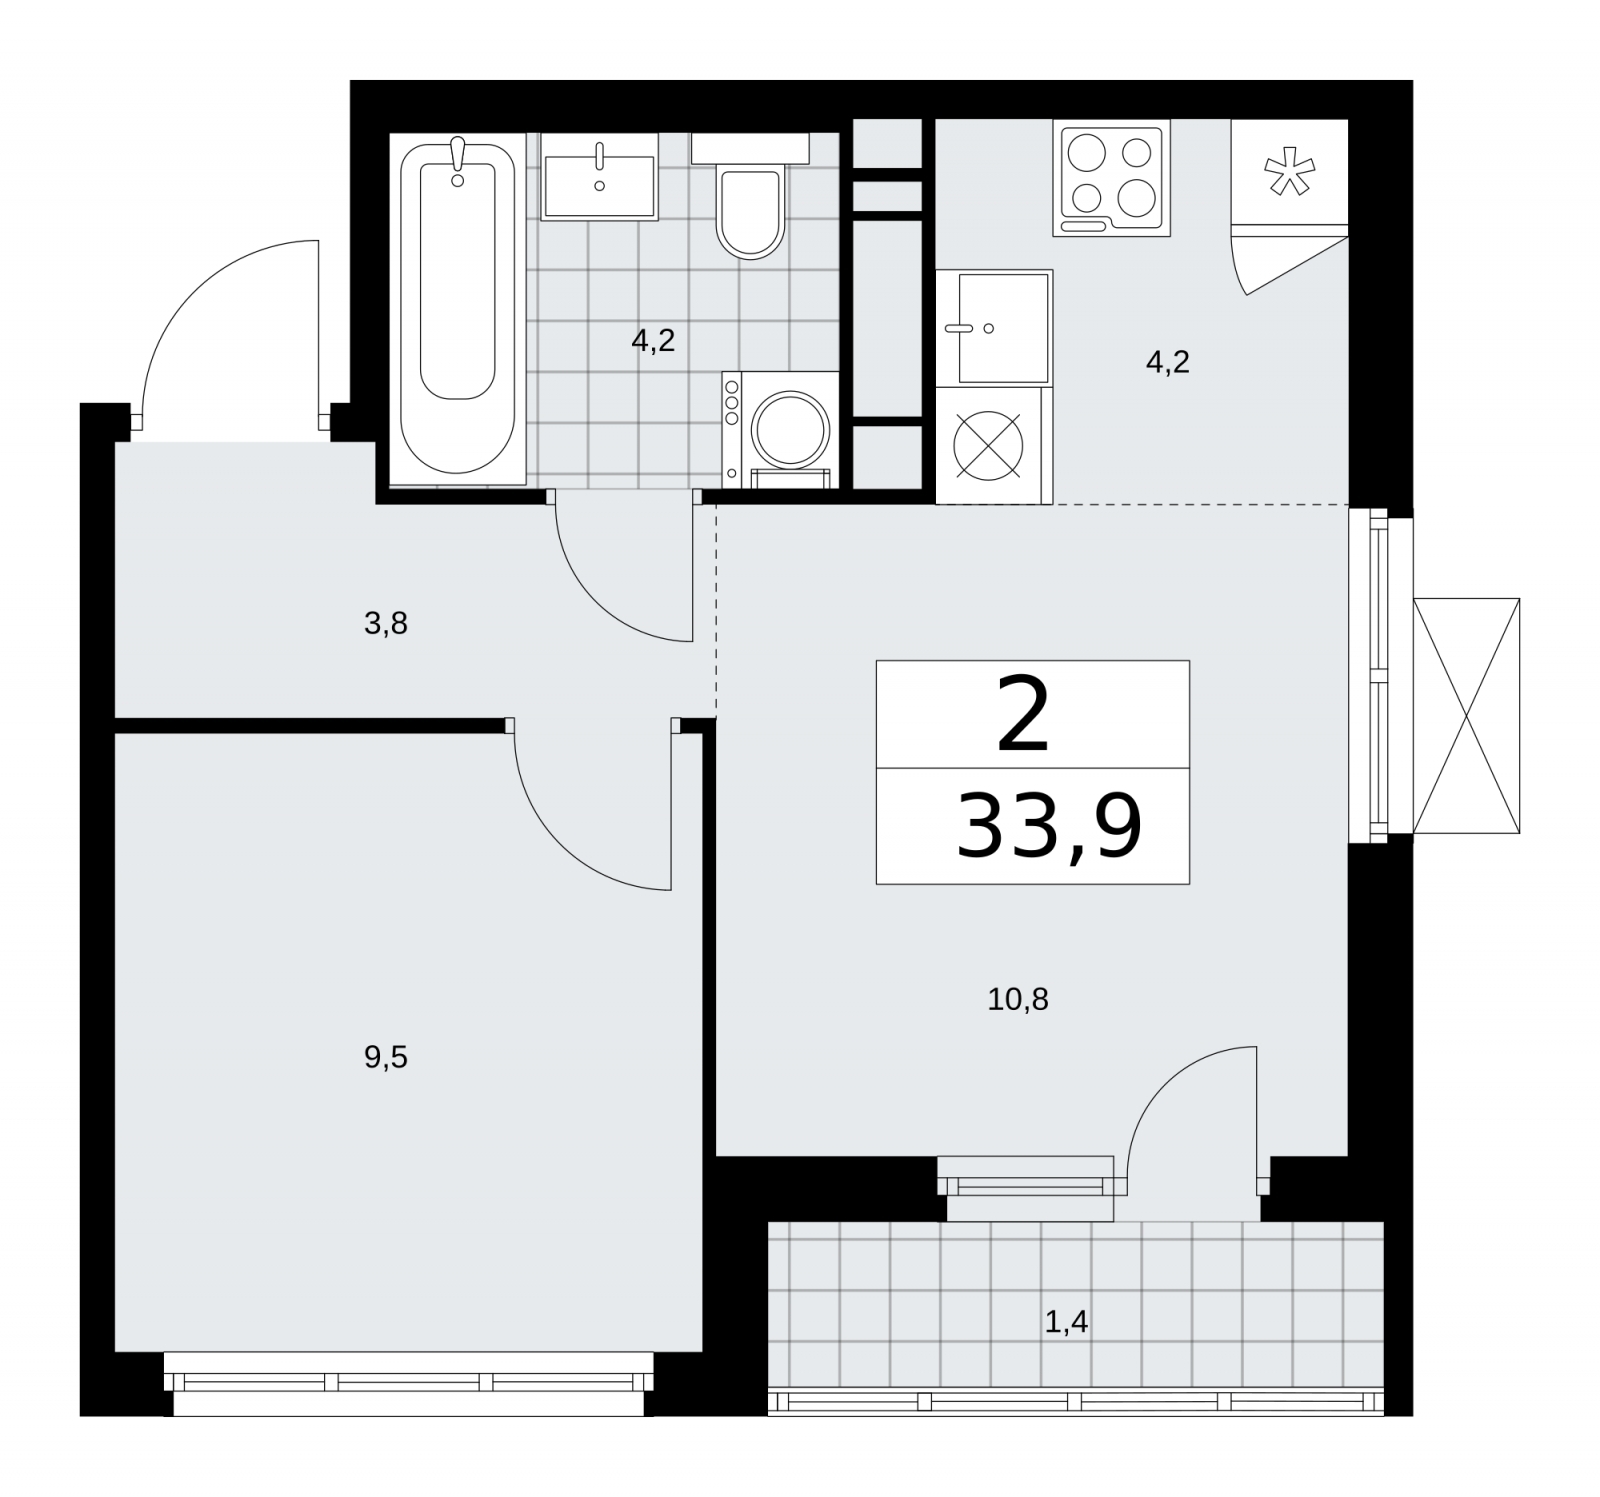 Продается просторная 2-комн. квартира с европланировкой в новом жилом комплексе, недалеко от метро